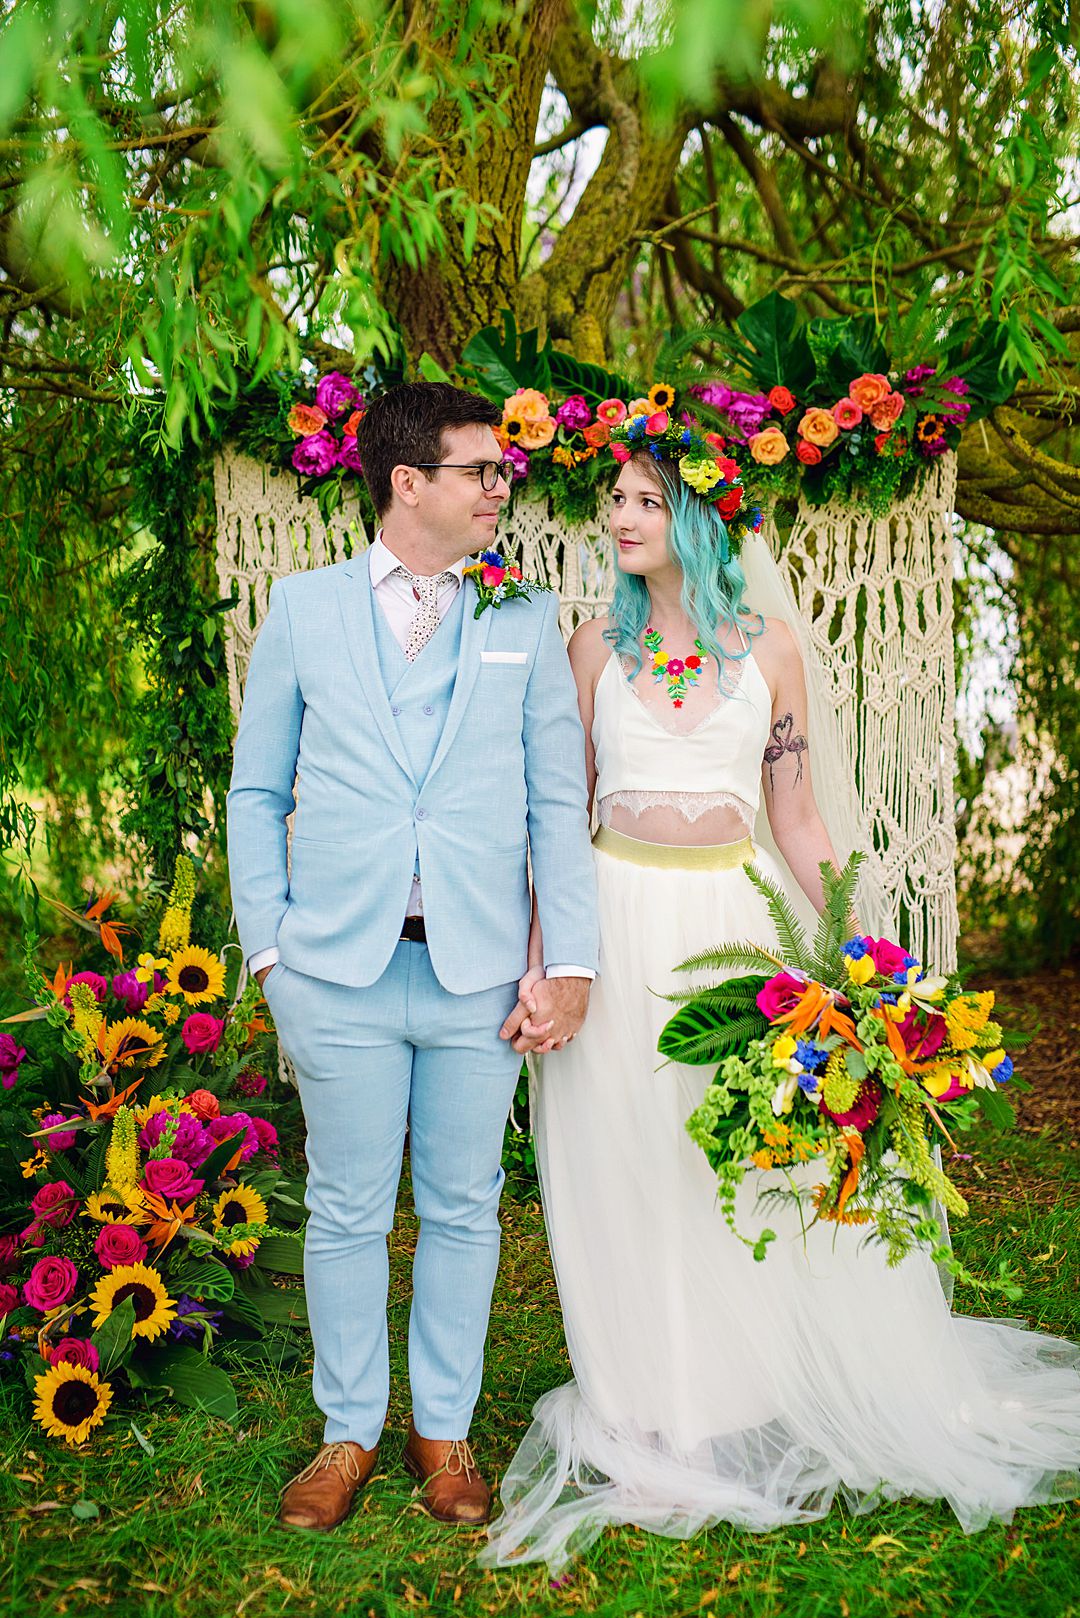 Casamento colorido: 10 maneiras de adicionar cor na decoração